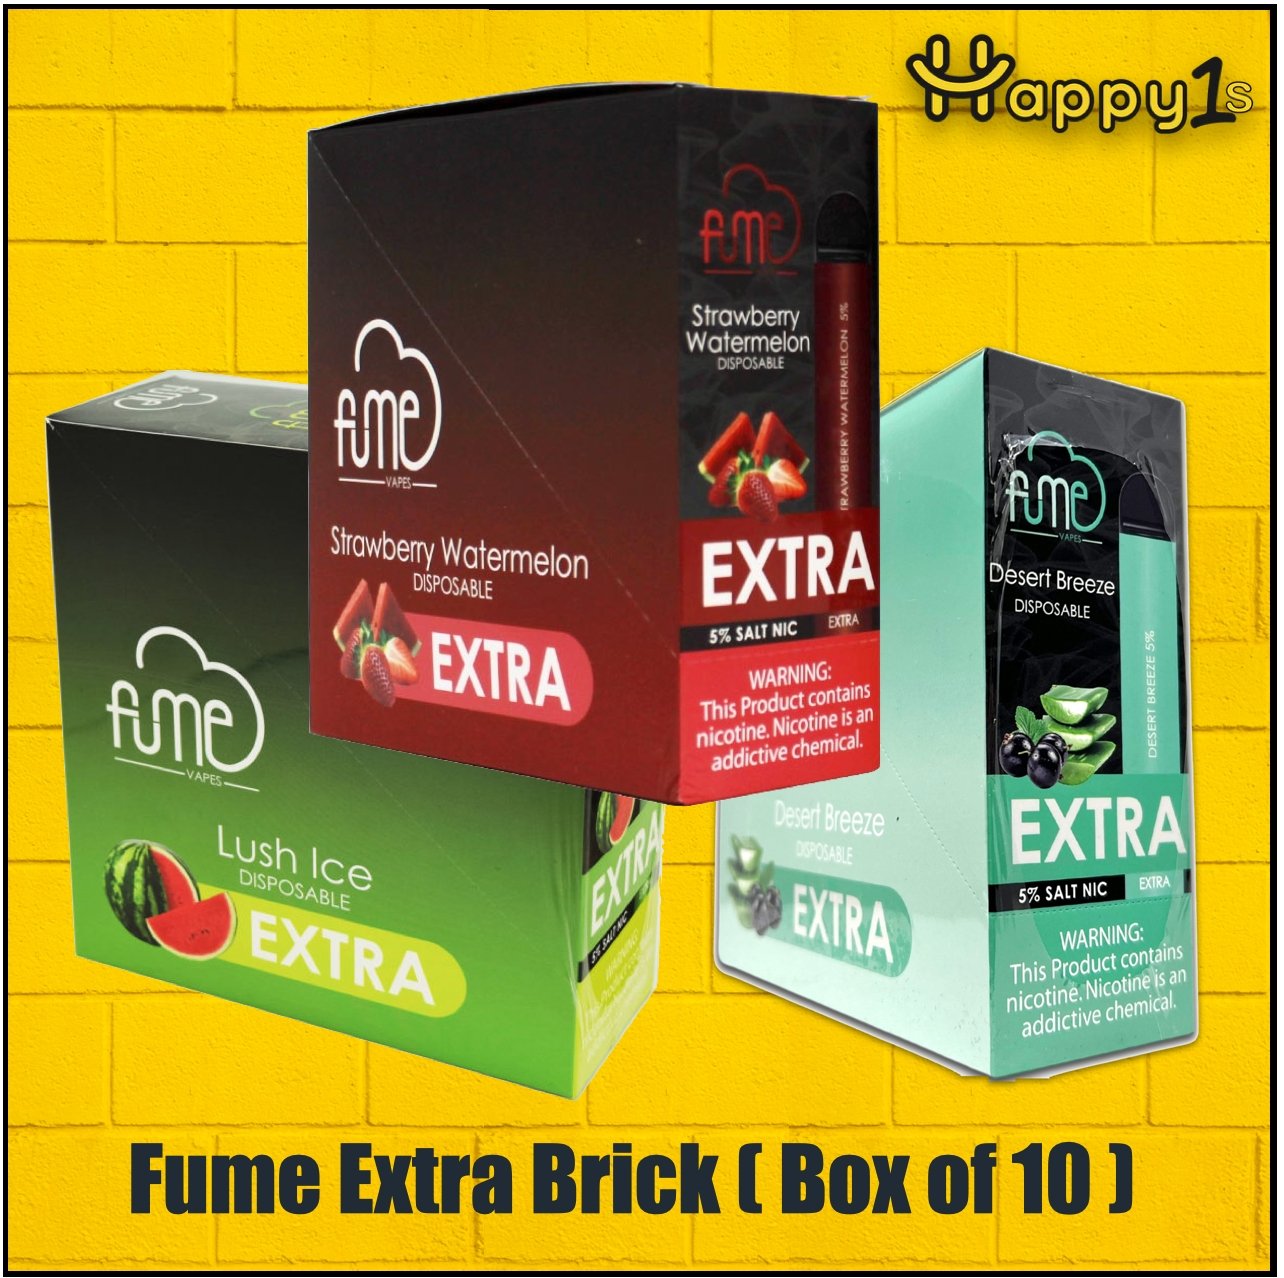 Fume Extra Retail Box of 10 - Happy Ones 